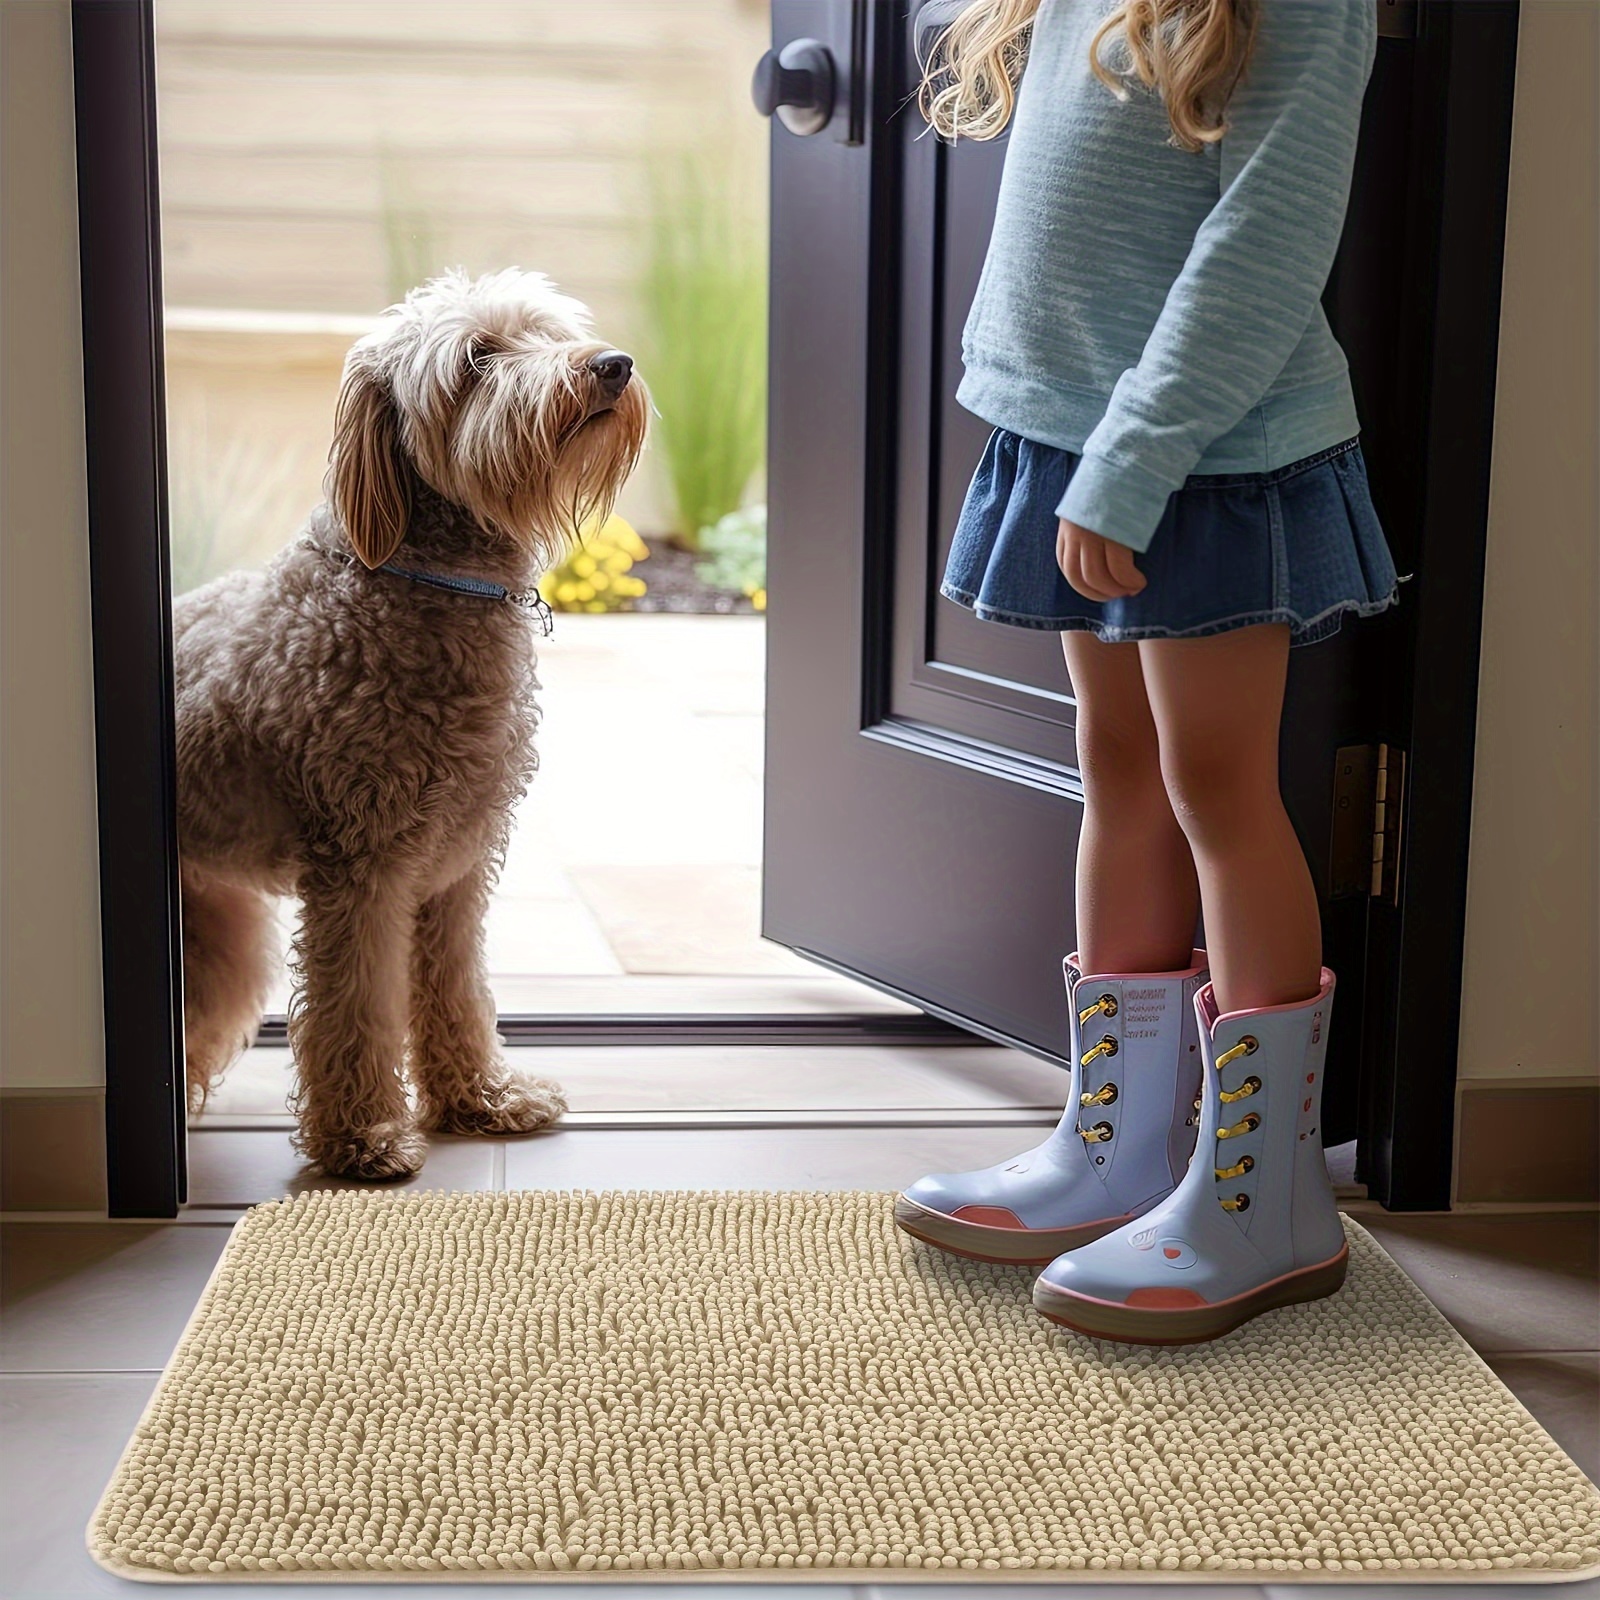 10 Best Indoor Door Mats for Dogs